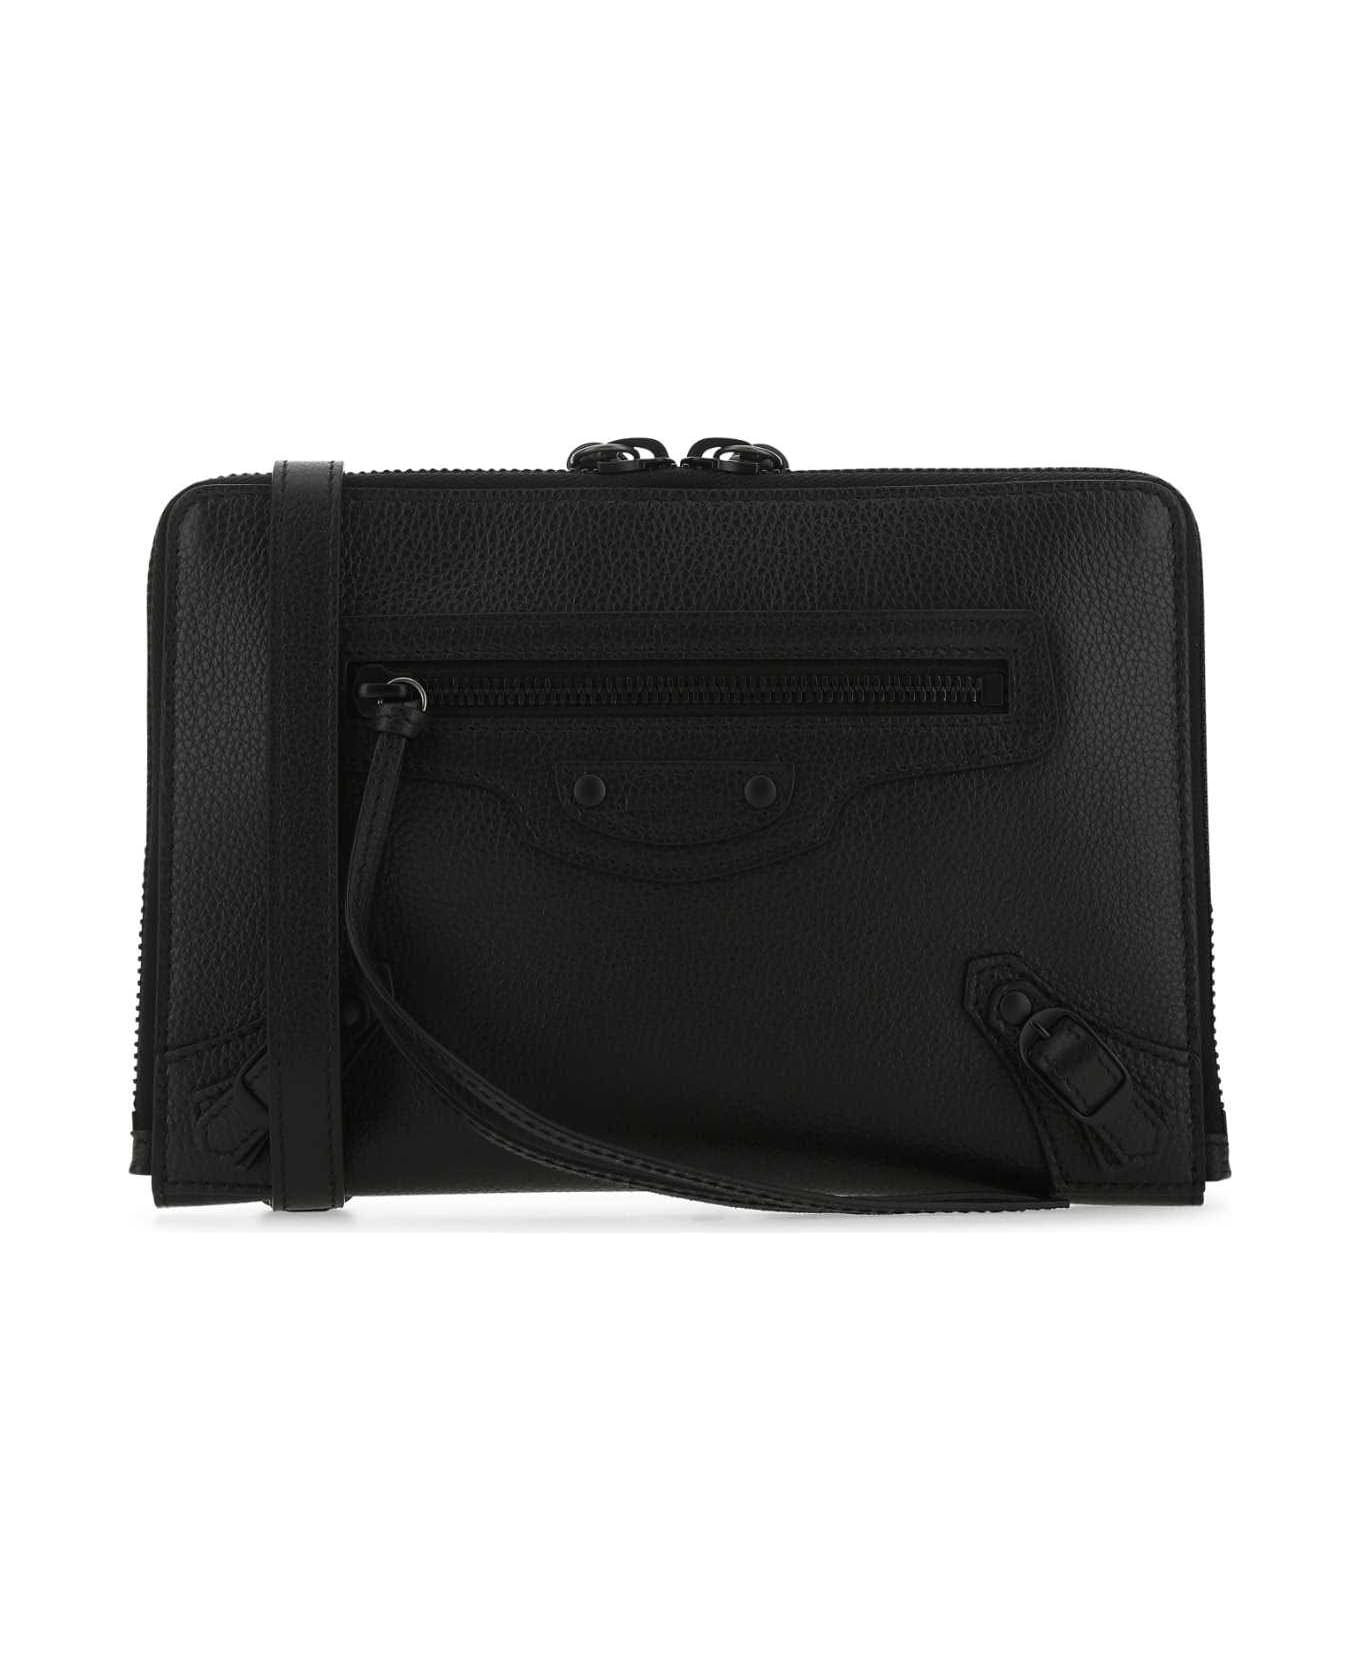 Balenciaga Black Leather Neo Classic S Pouch - 1000